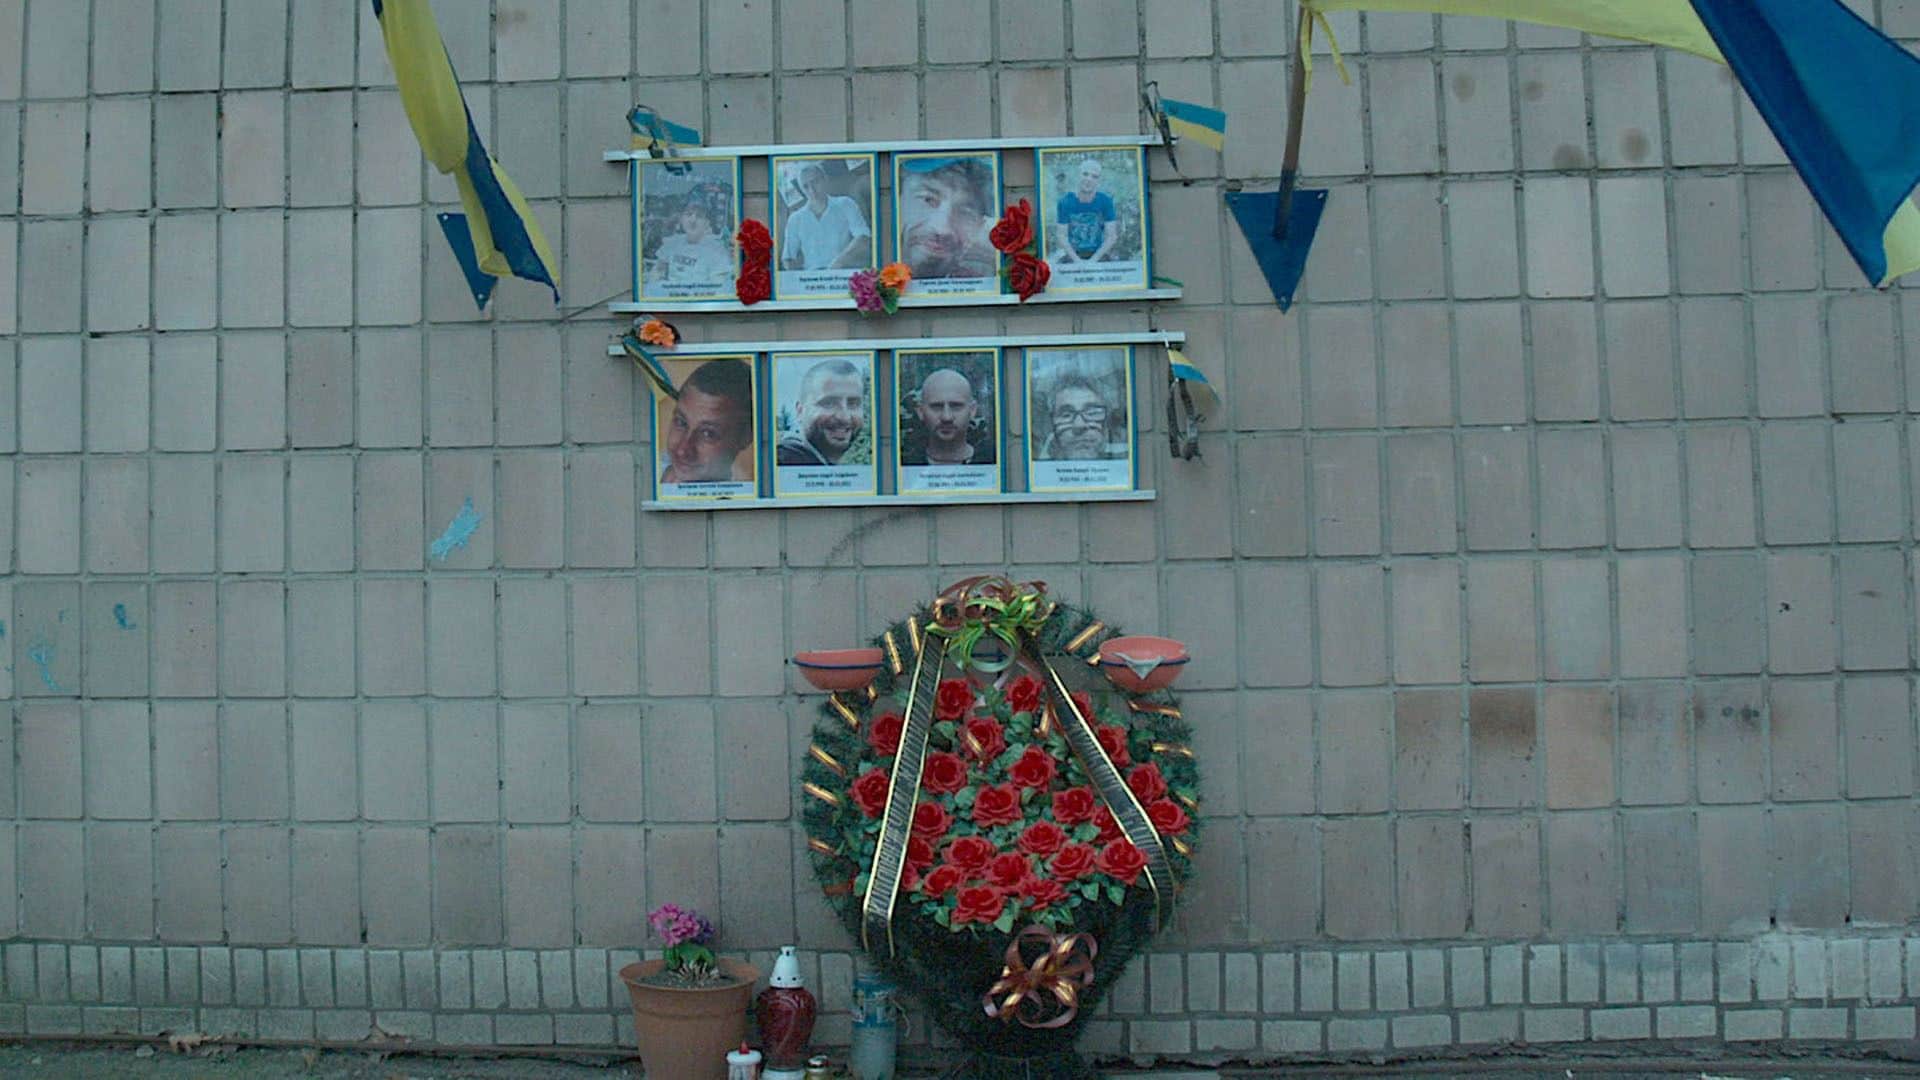 Re: Kriegsverbrechen auf der Spur - Mord an ukrainischen Zivilisten